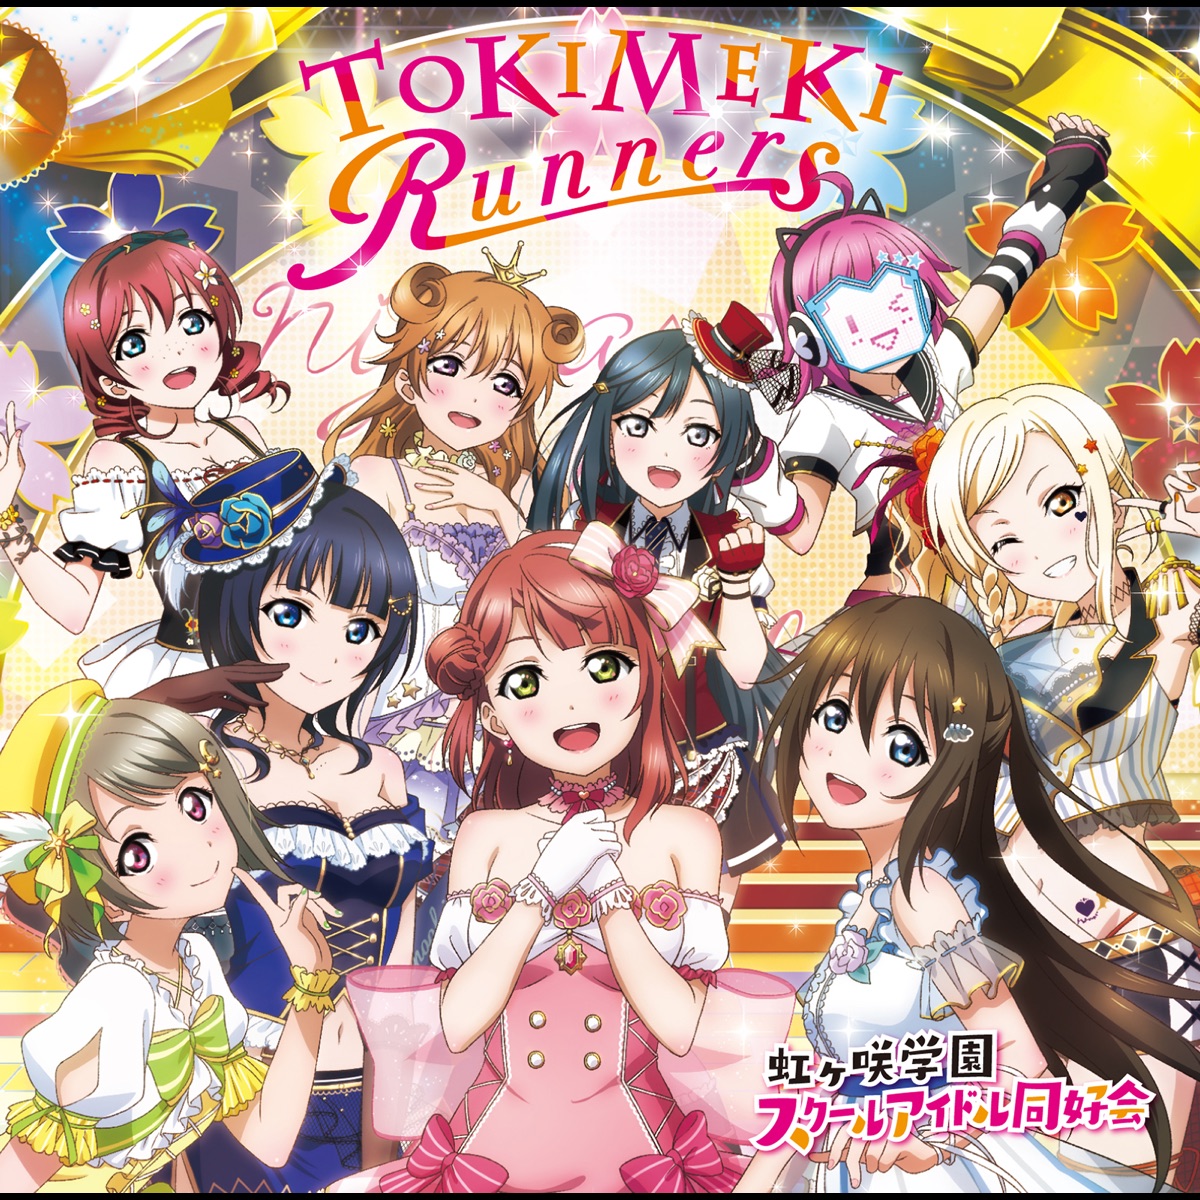 Cover for『Kanata Konoe (Akari Kito) - Nemureru Mori ni Ikitai na』from the release『TOKIMEKI Runners』